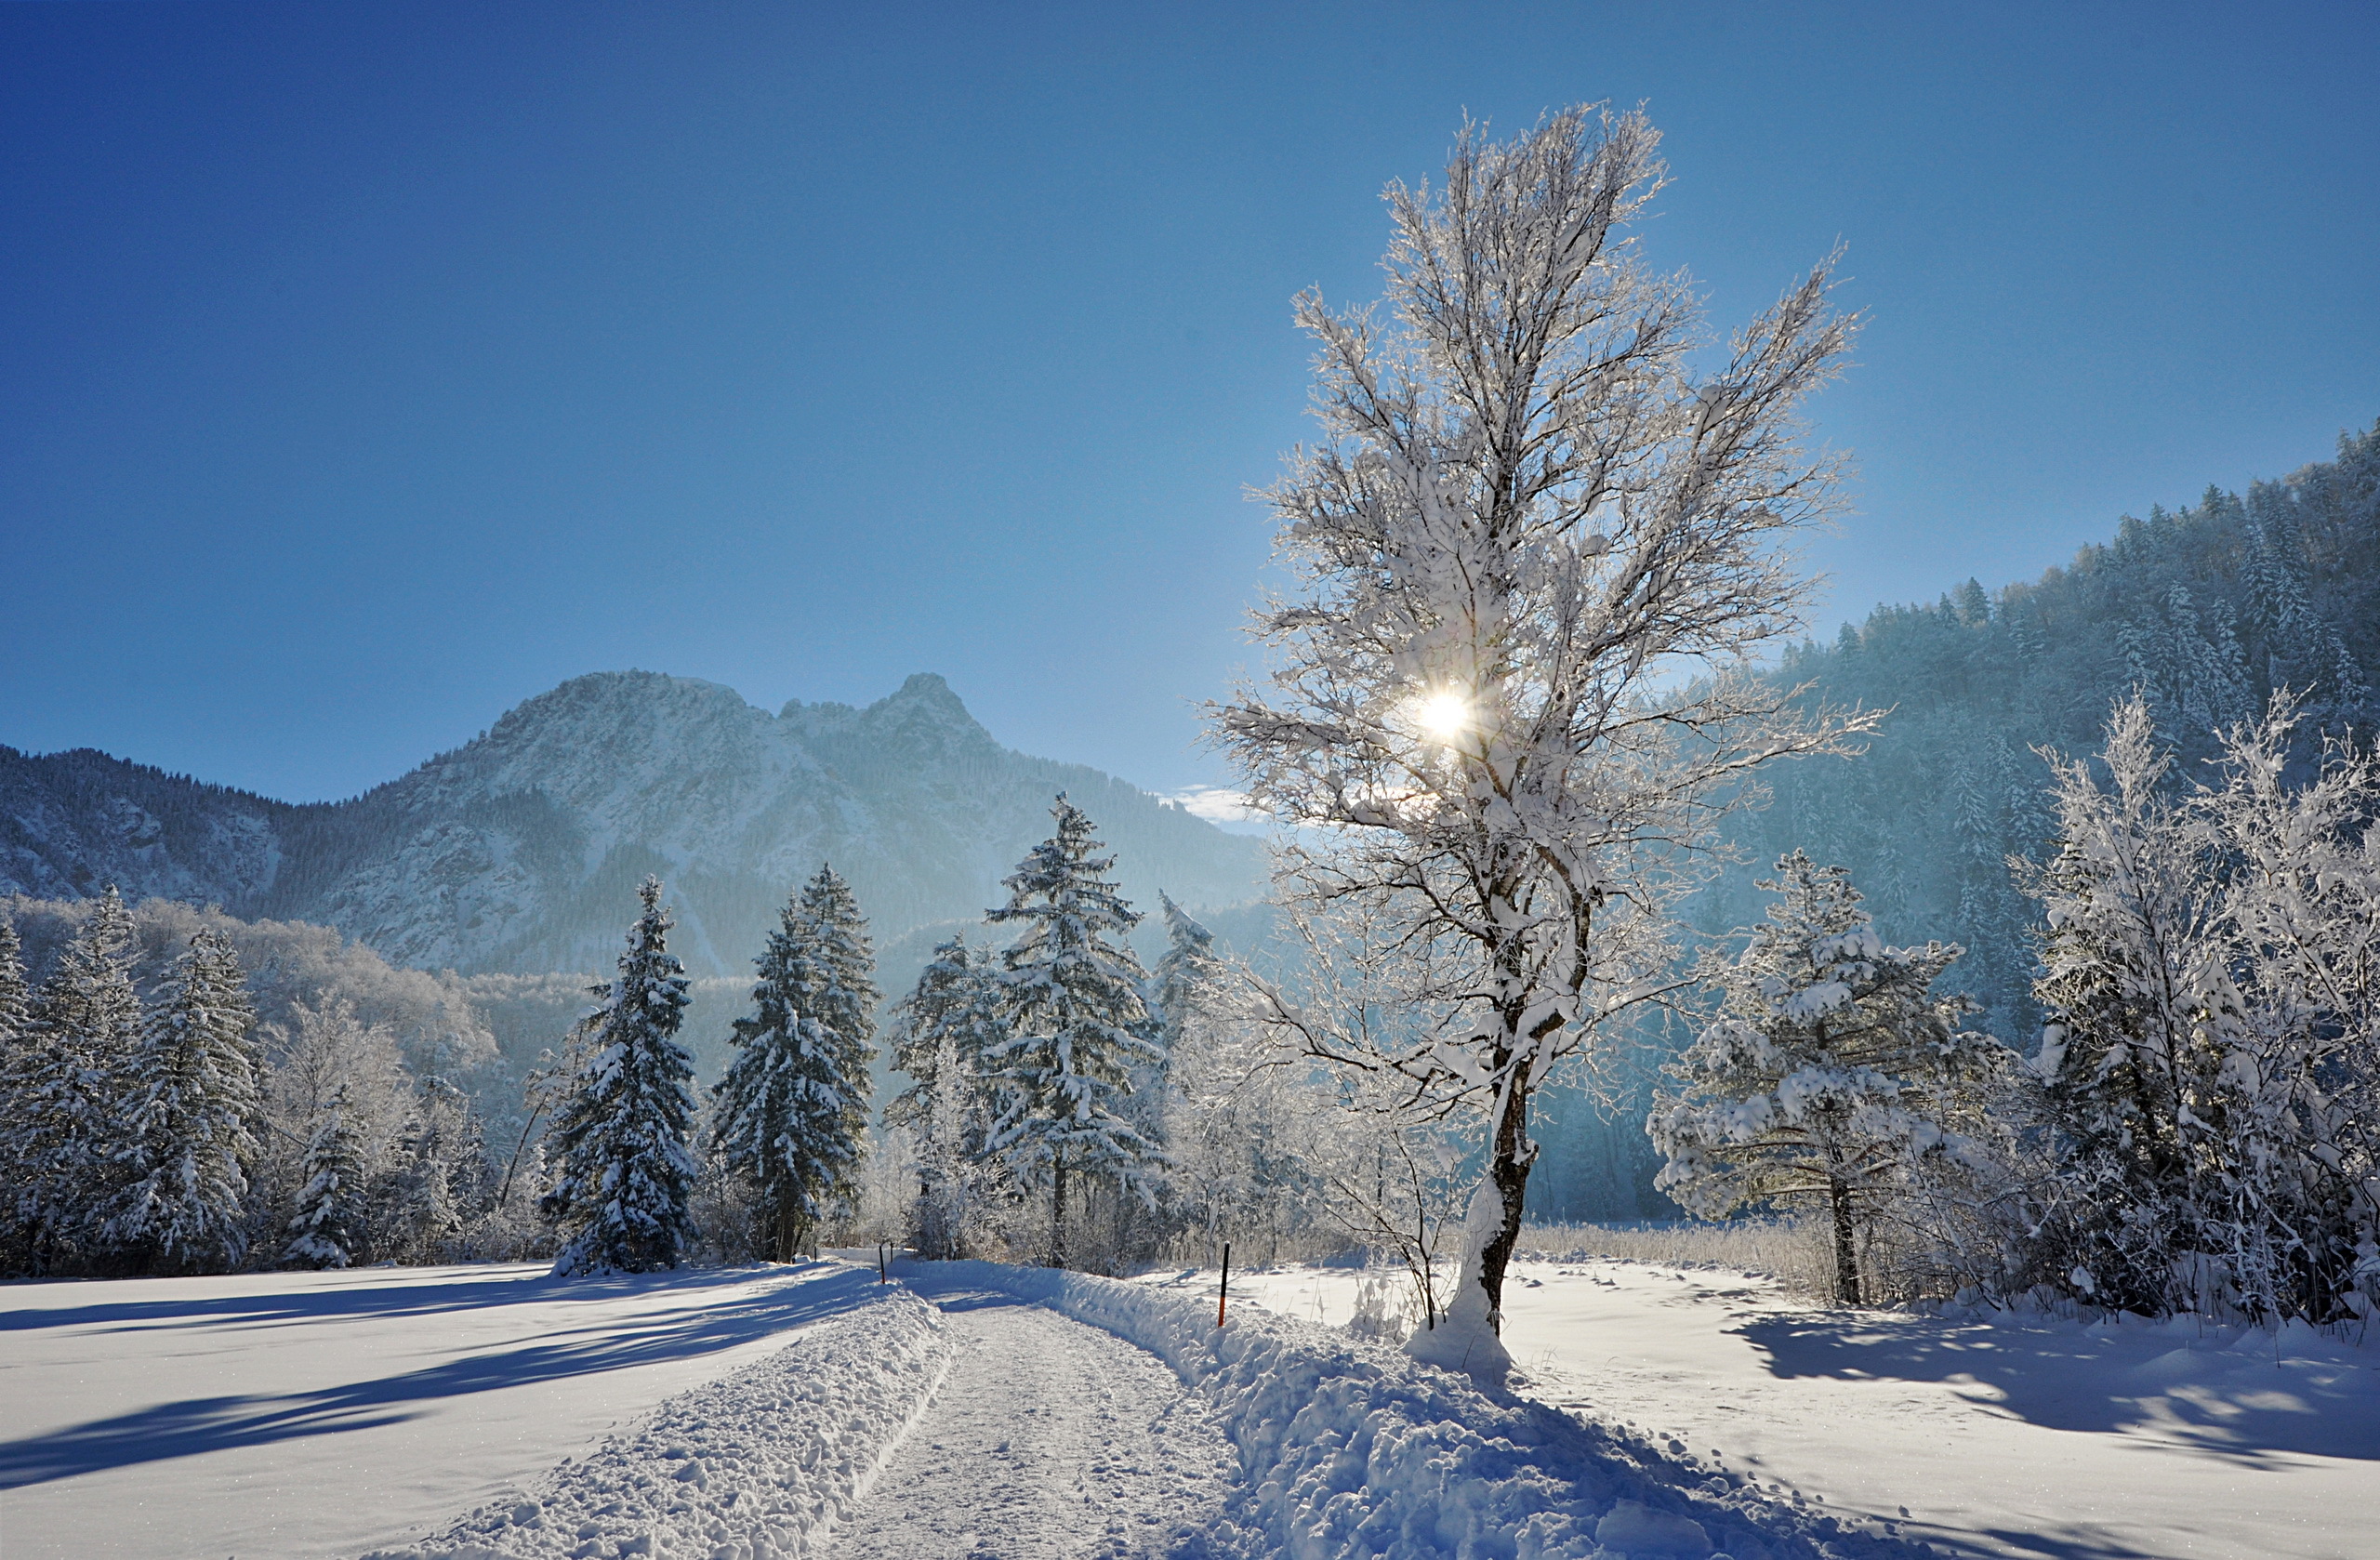 Скачать обои бесплатно Зима, Природа, Снег, Дорога, Дерево, Земля/природа картинка на рабочий стол ПК